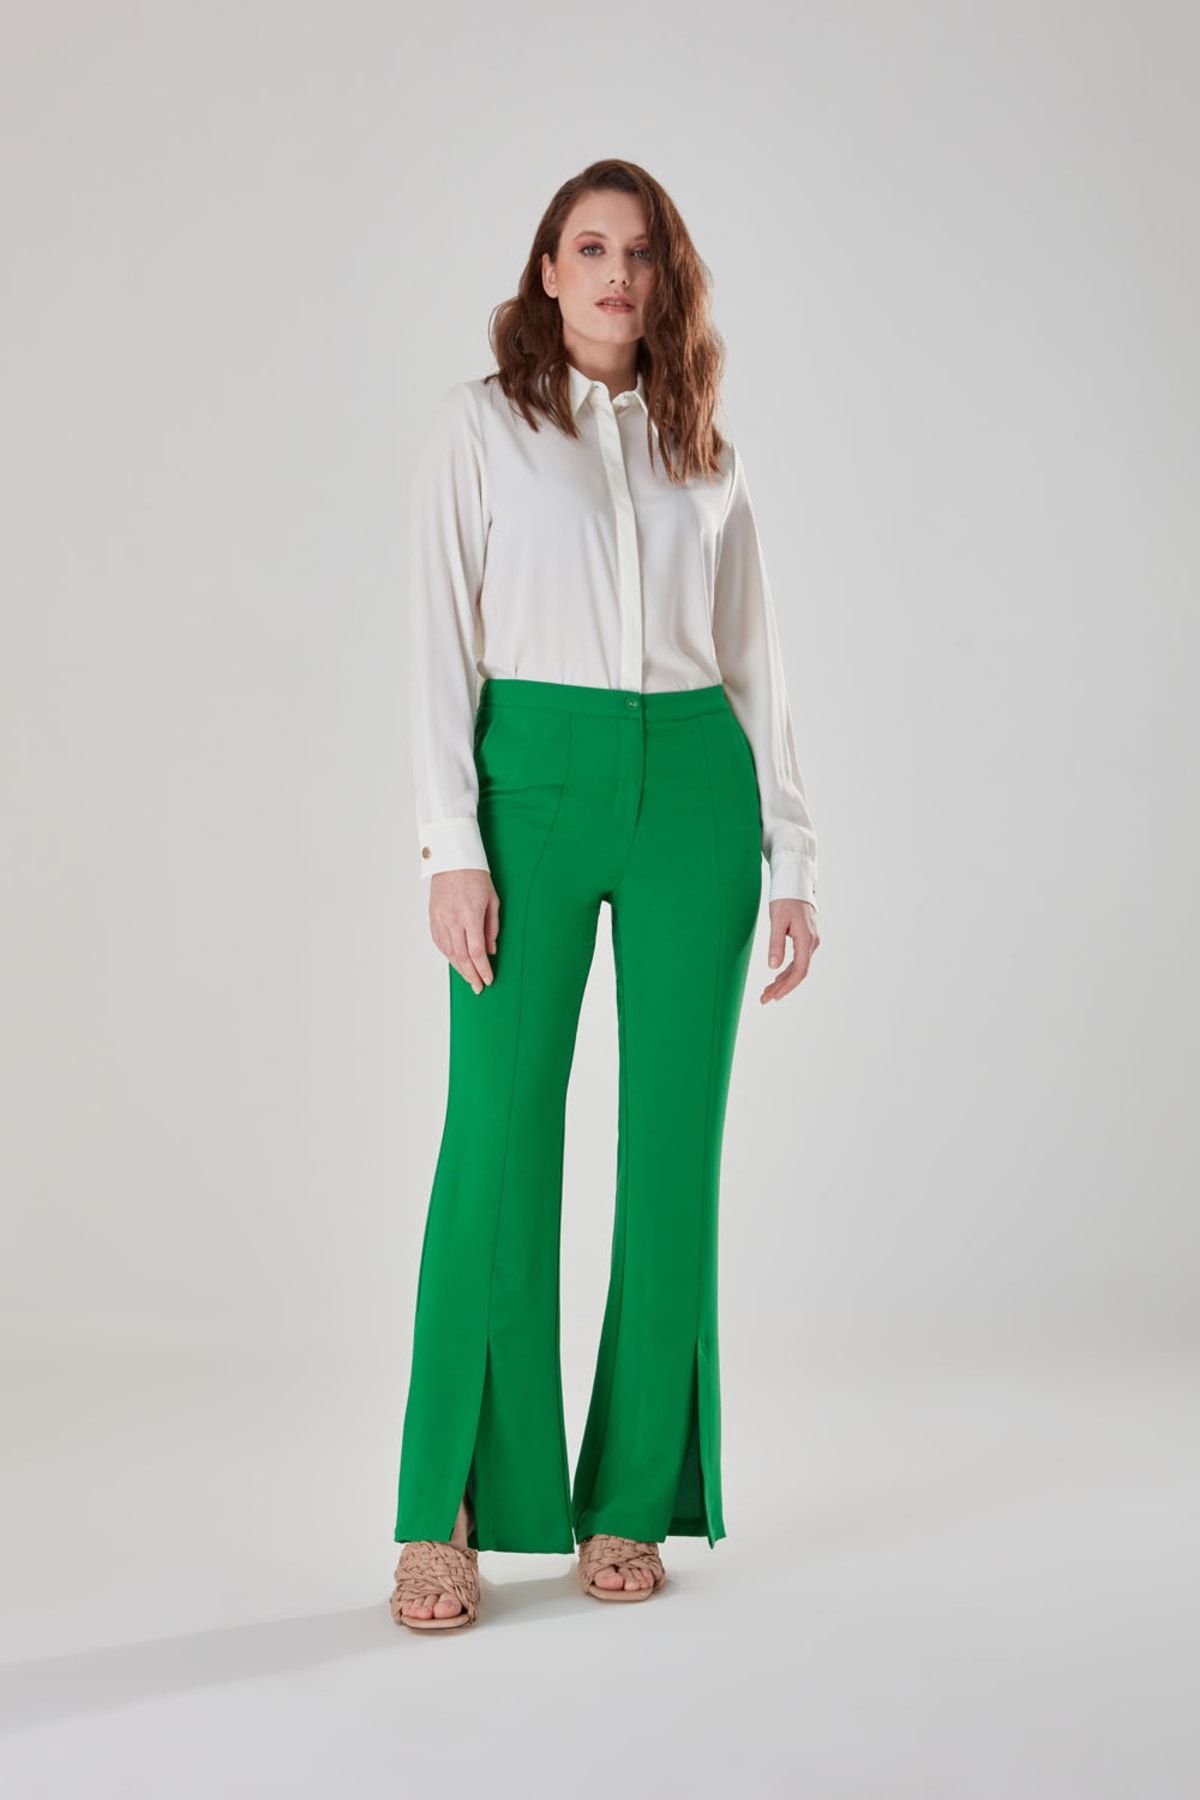 Mizalle Önden Yırtmaçlı Yeşil Dokuma Yüksek Bel Pantolon